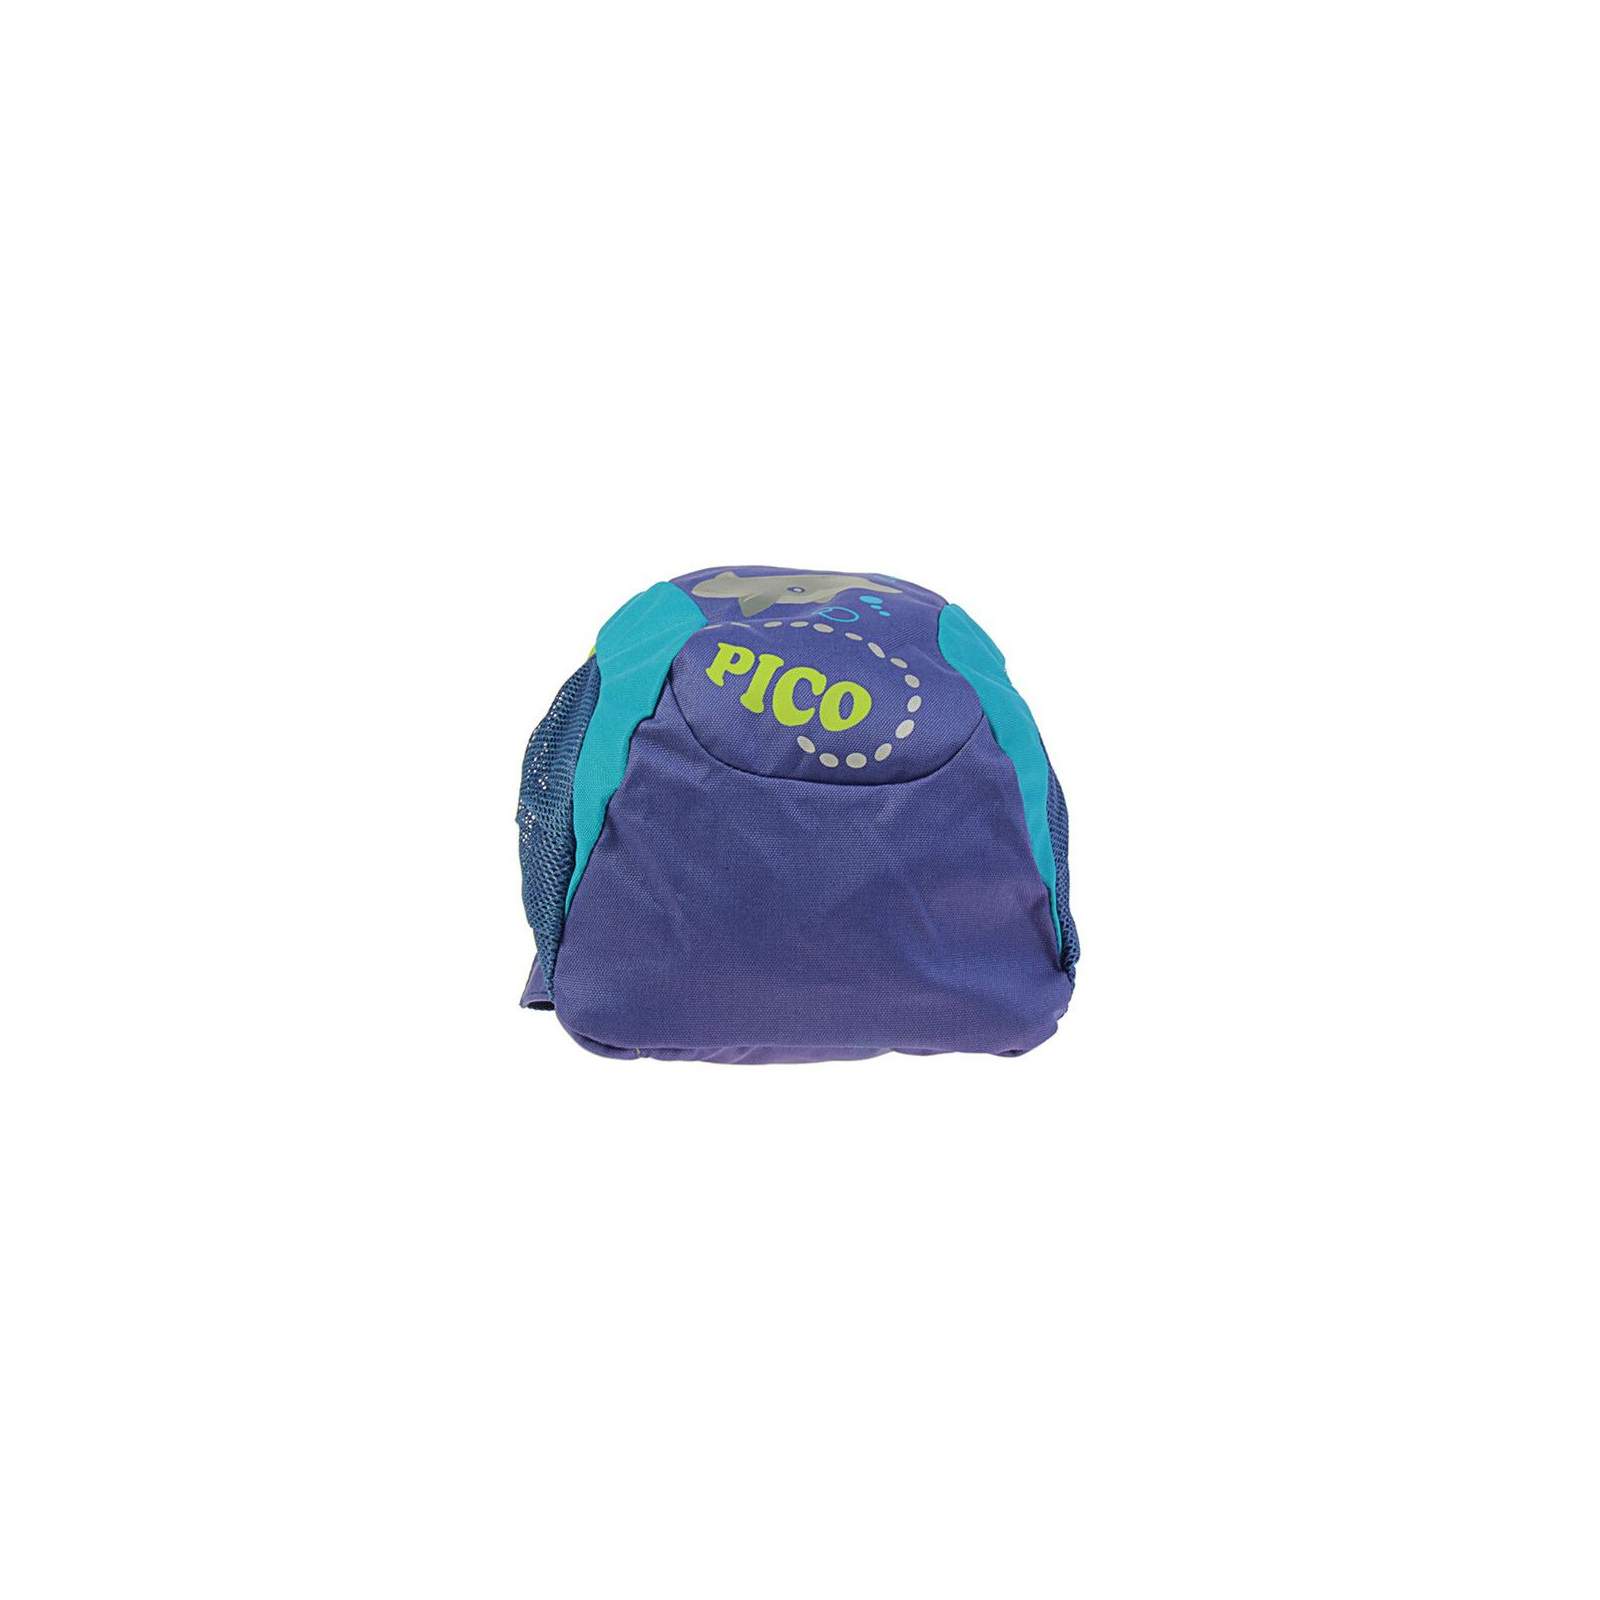 Рюкзак школьный Deuter Pico 3391 indigo-turquoise (36043 3391) изображение 6